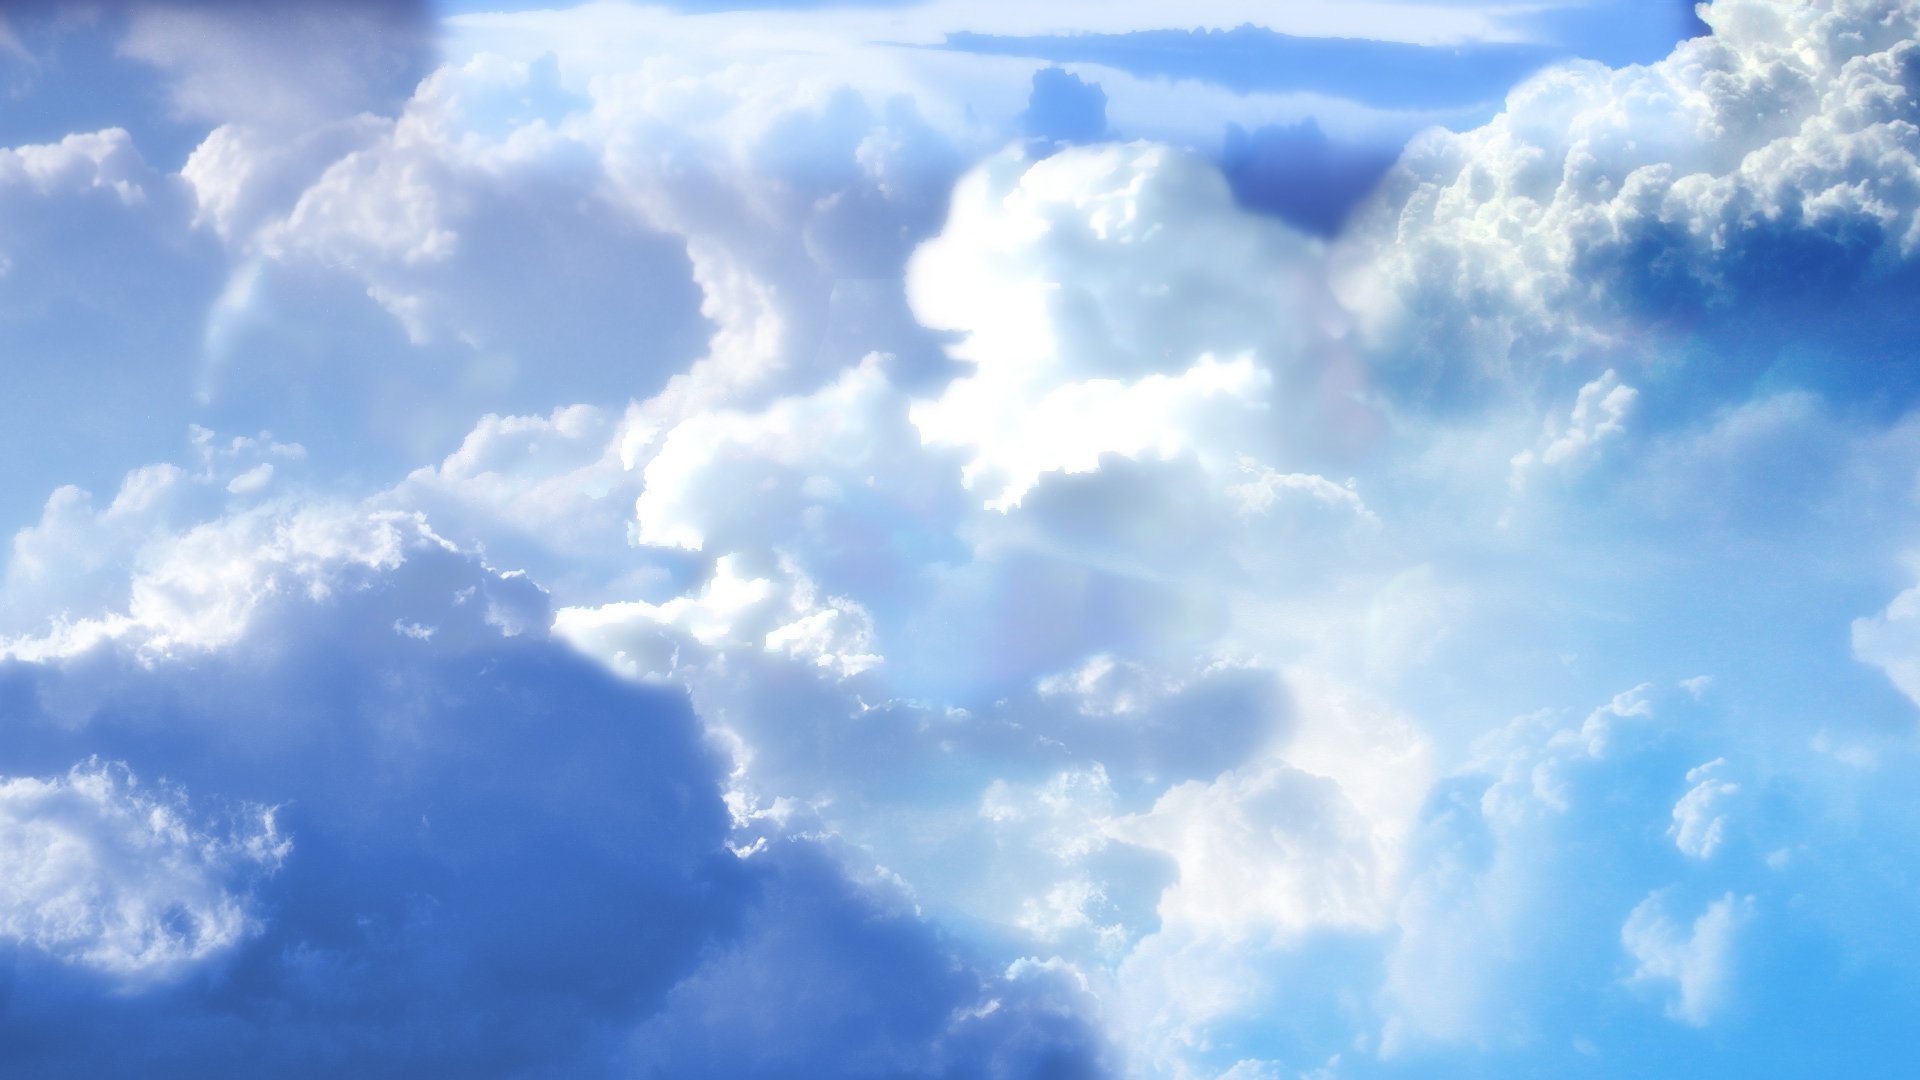 Clouds Wallpaper 1920x1080 Clouds 1920x1080